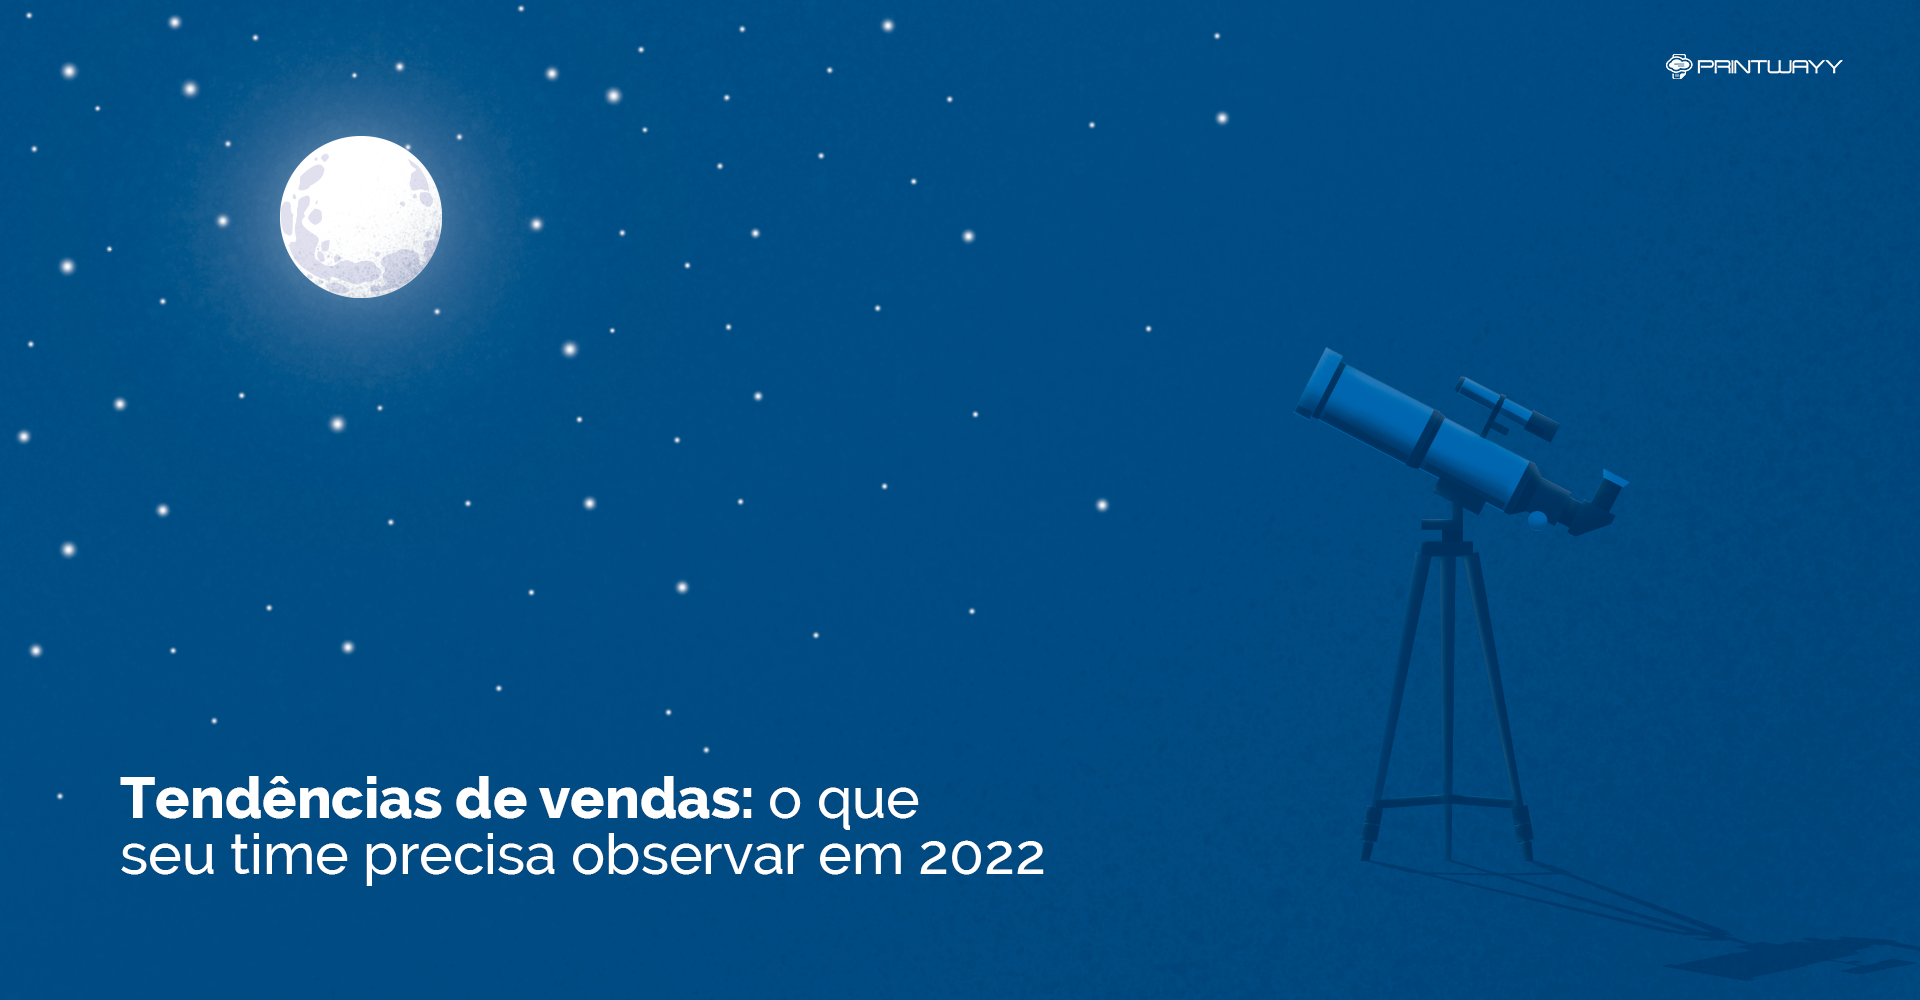 Um telescópio apontado para a lua e as estrelas. Ilustra as tendências de vendas que os times precisarão observar este ano.